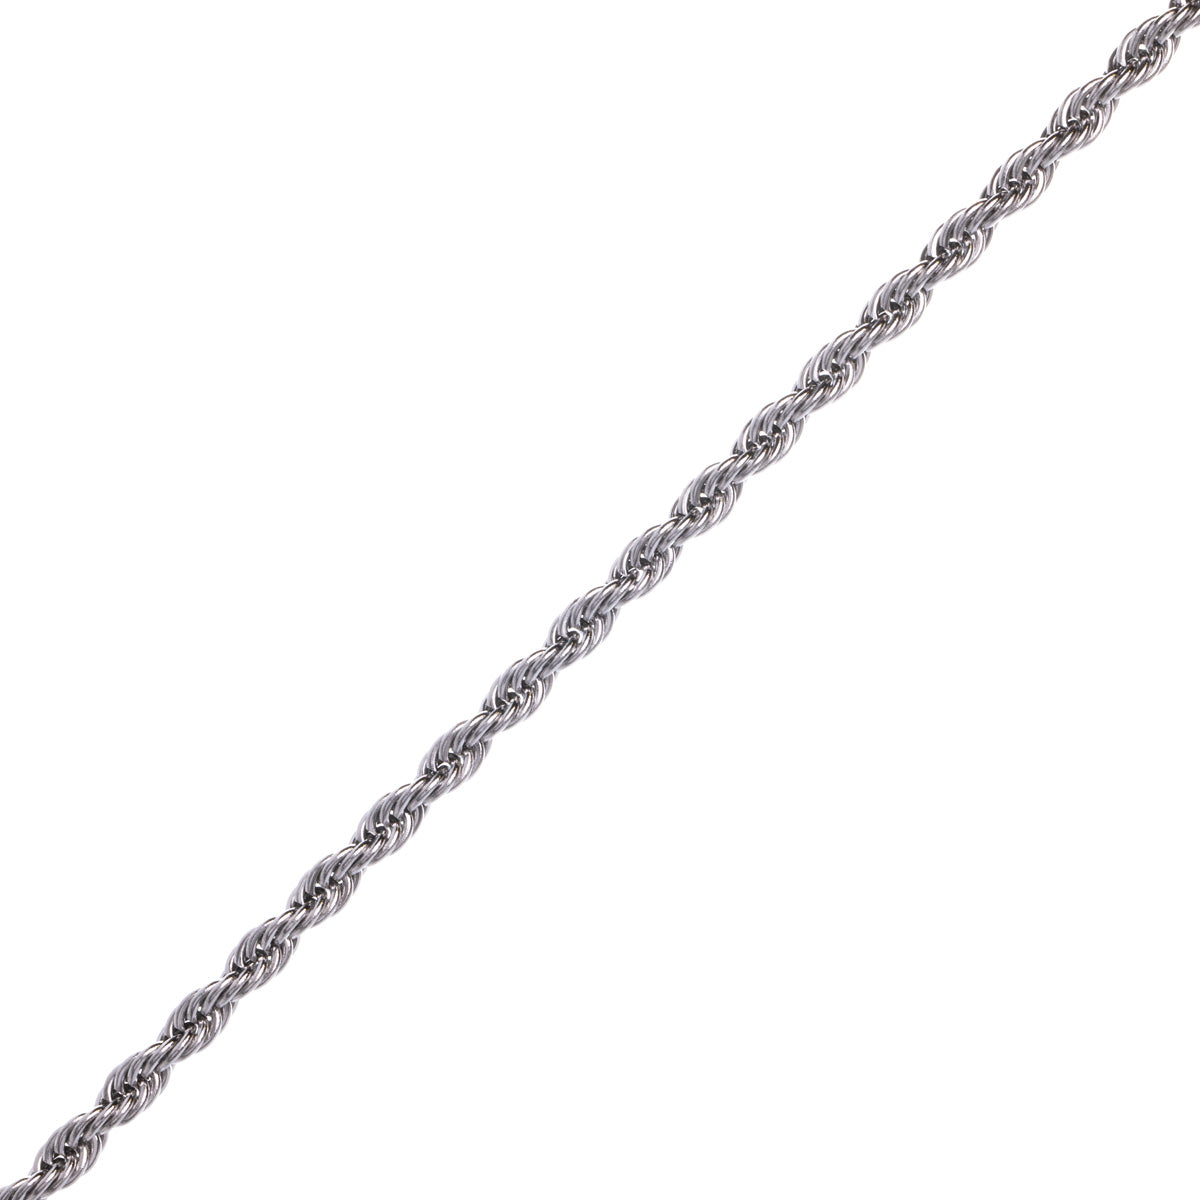 Rope chain steel cordeliaketju necklace 4mm 47cm +5cm